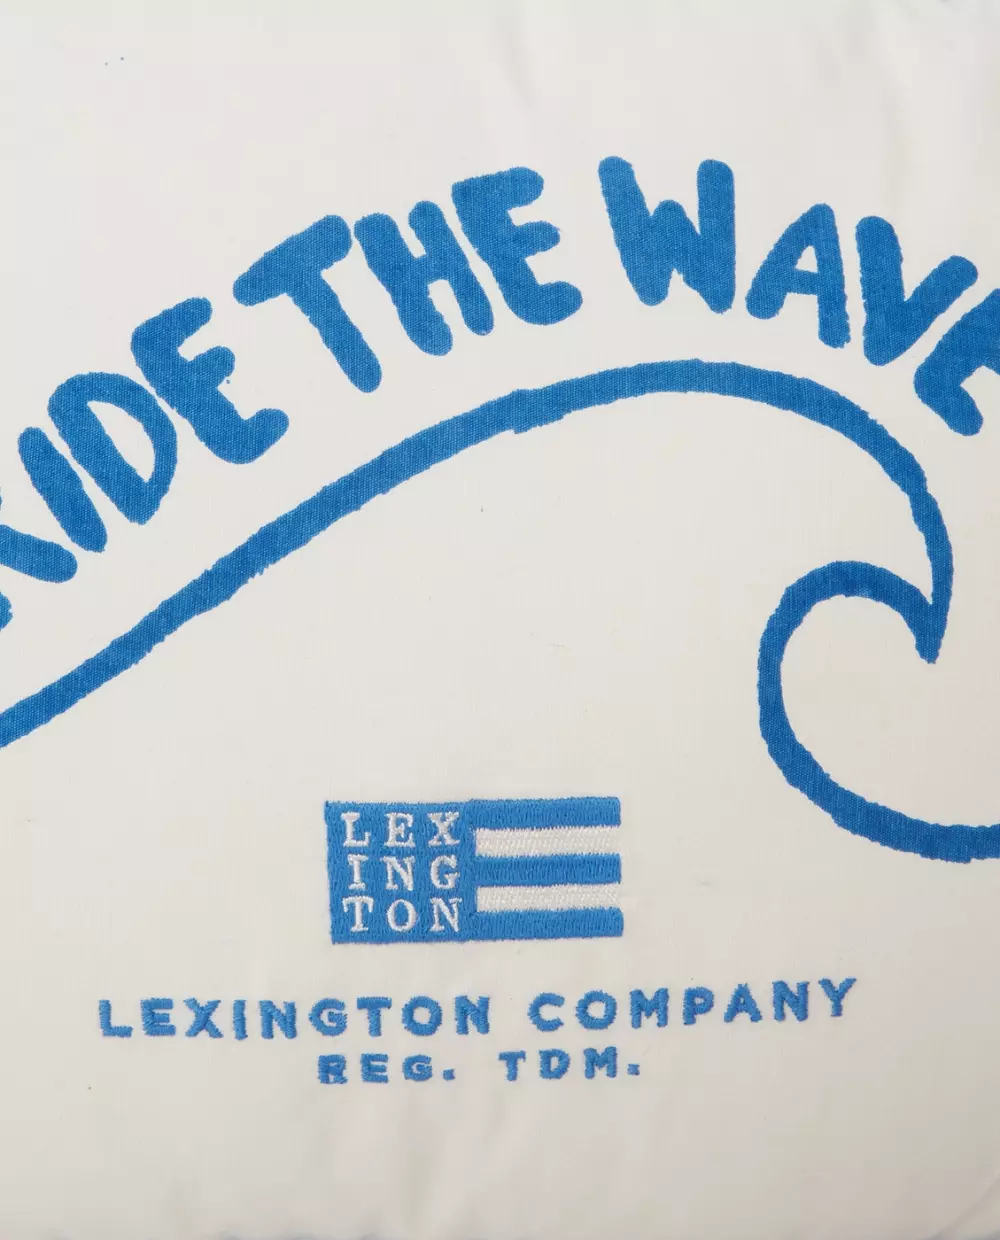 Lexington Pute Ride The Wave, 7321301695881, 122302601600-SH10, Tekstil, Puter og Putetrekk, Lexington, Ride The Wave Small Organic Cotton Pillow